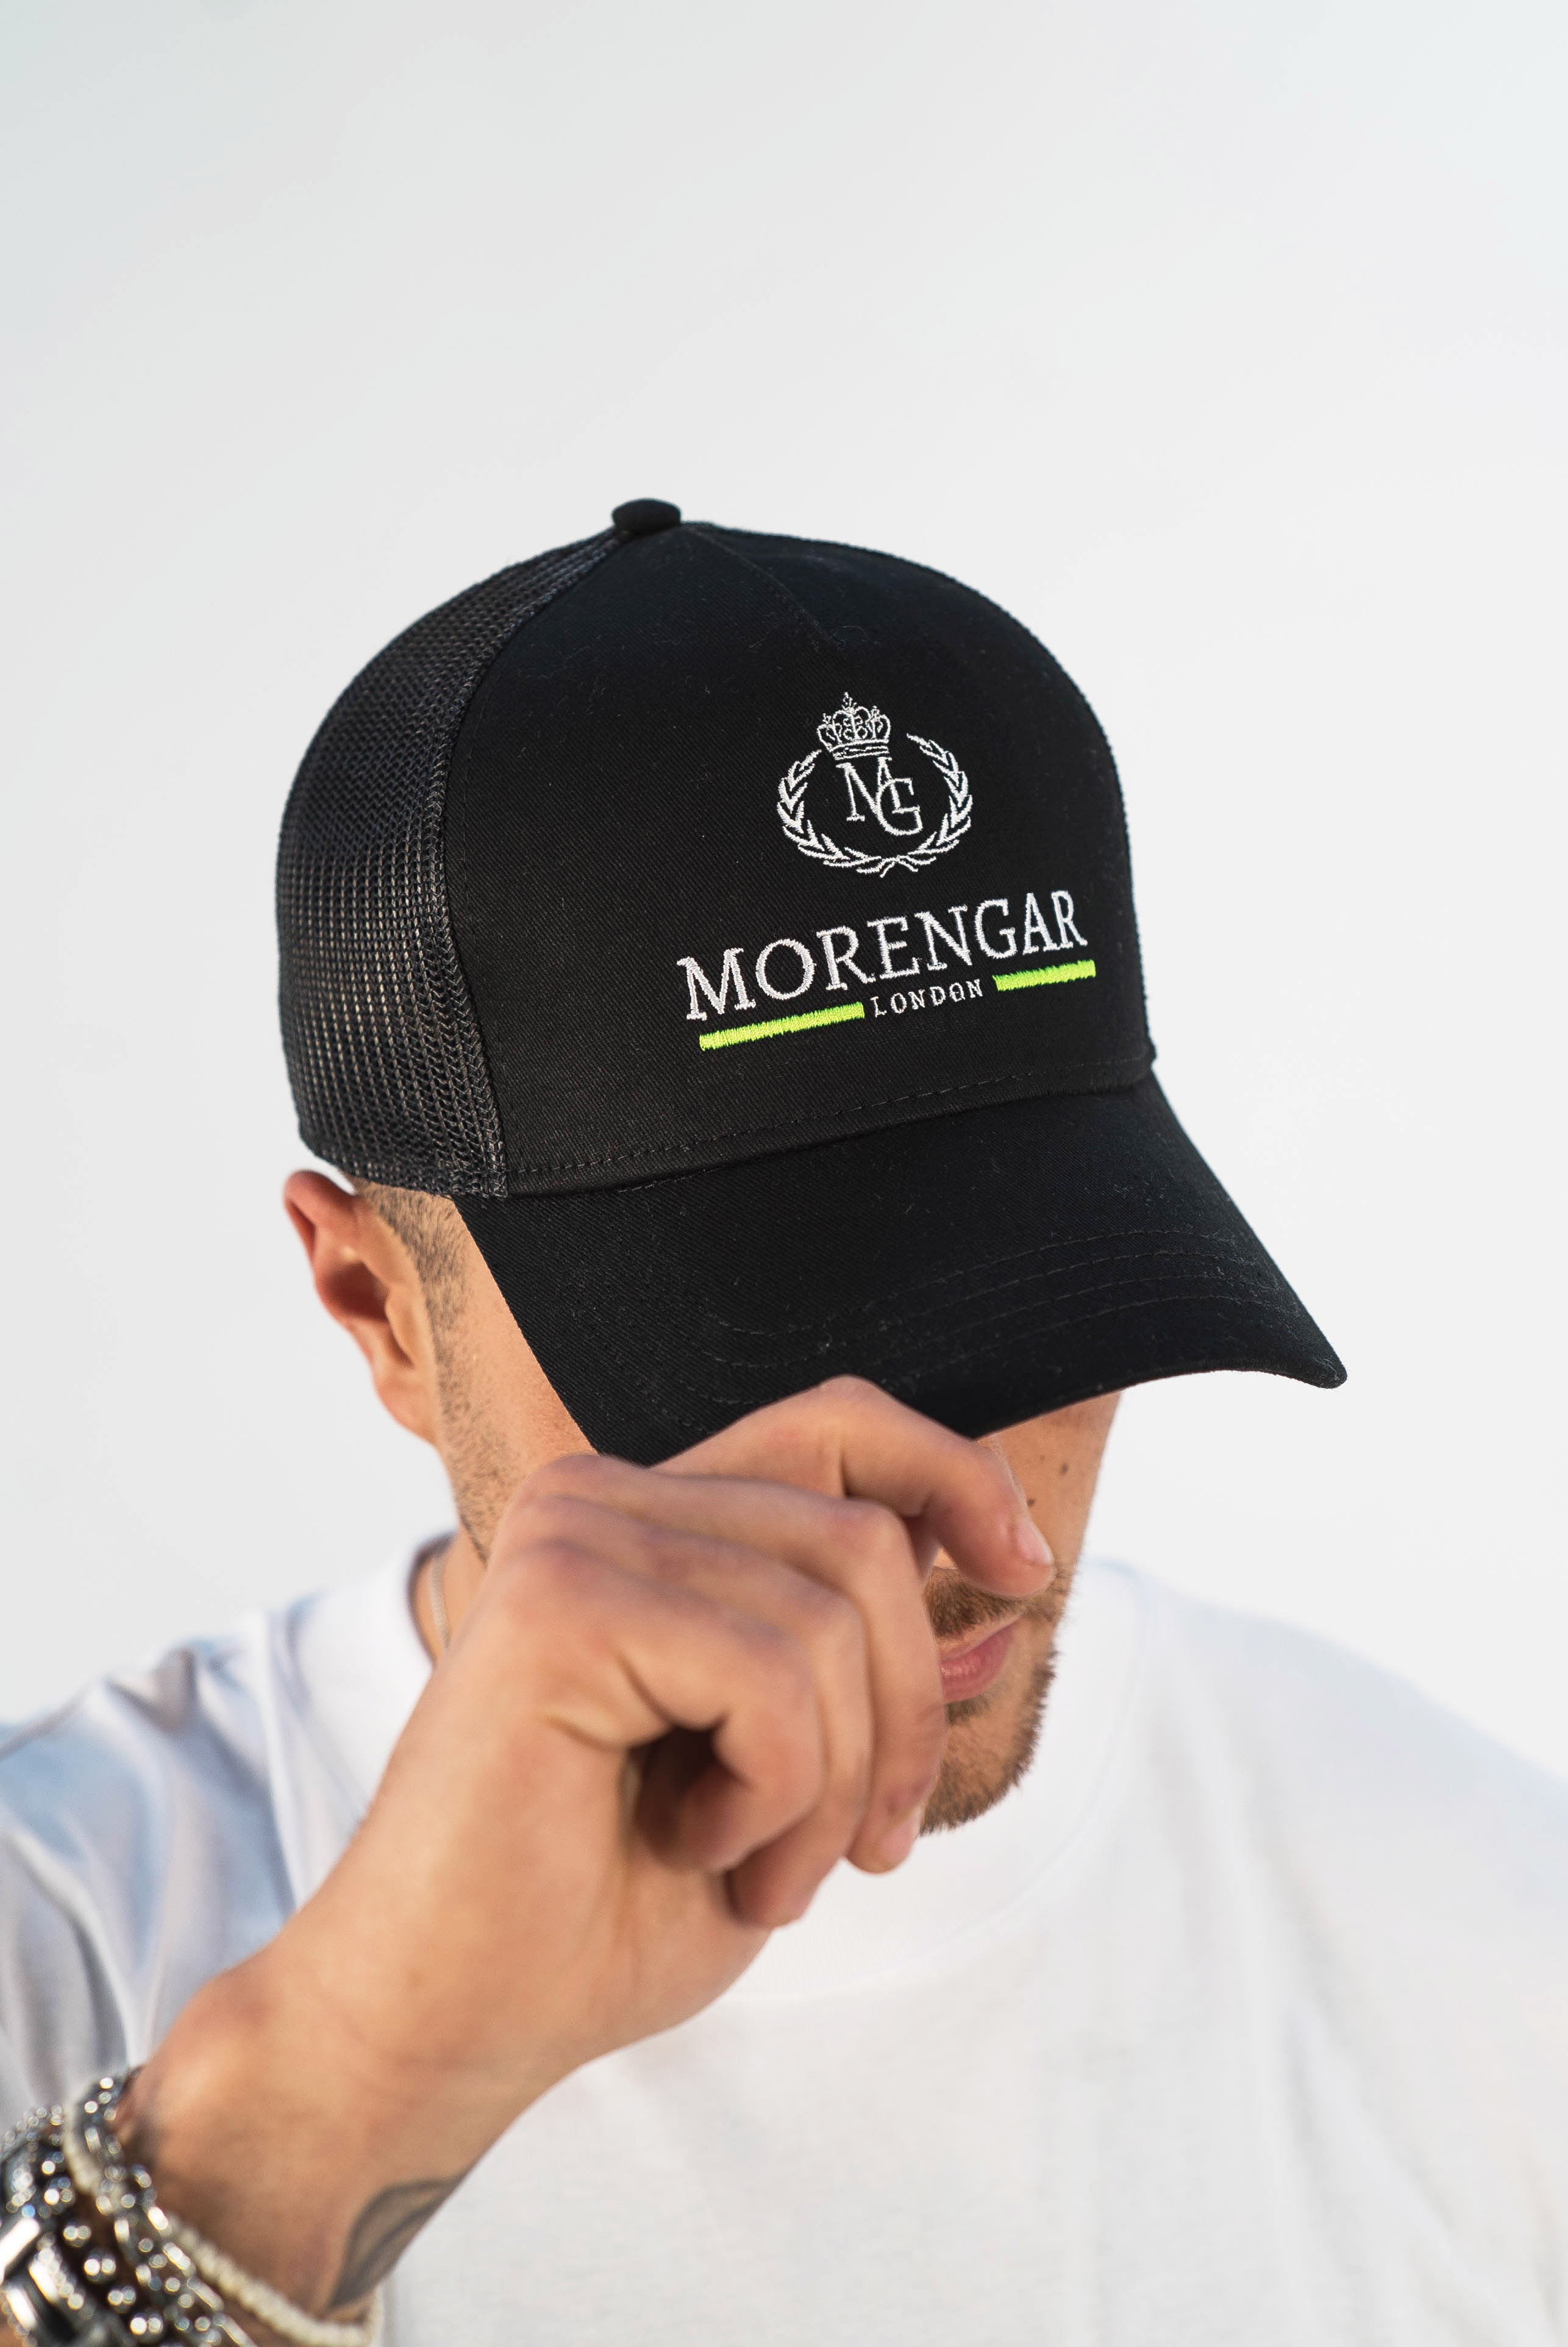 Morengar London Line Cap